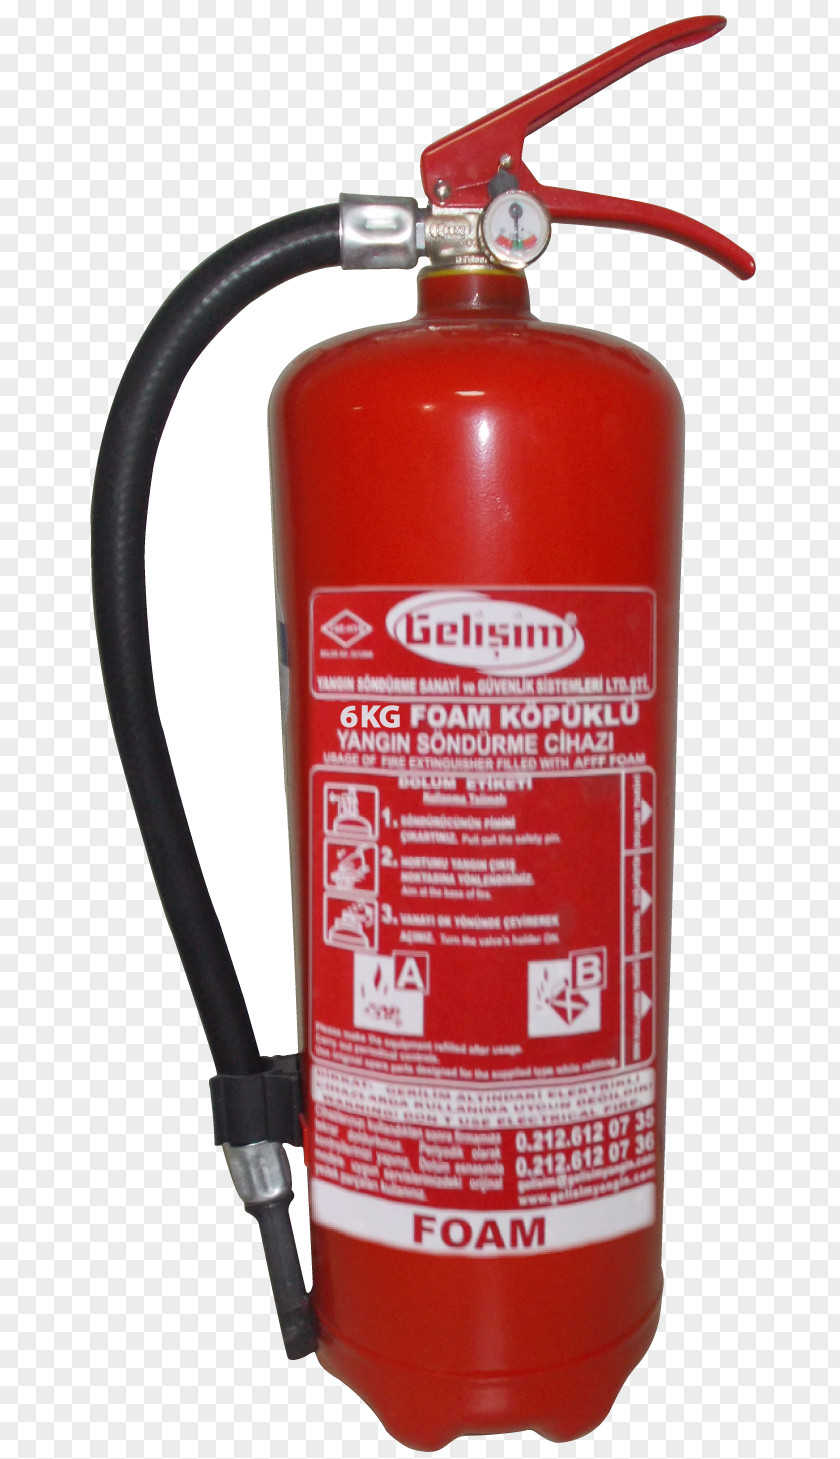 Barkod Fire Extinguishers Firefighting Foam EN 3 Storage Tank PNG